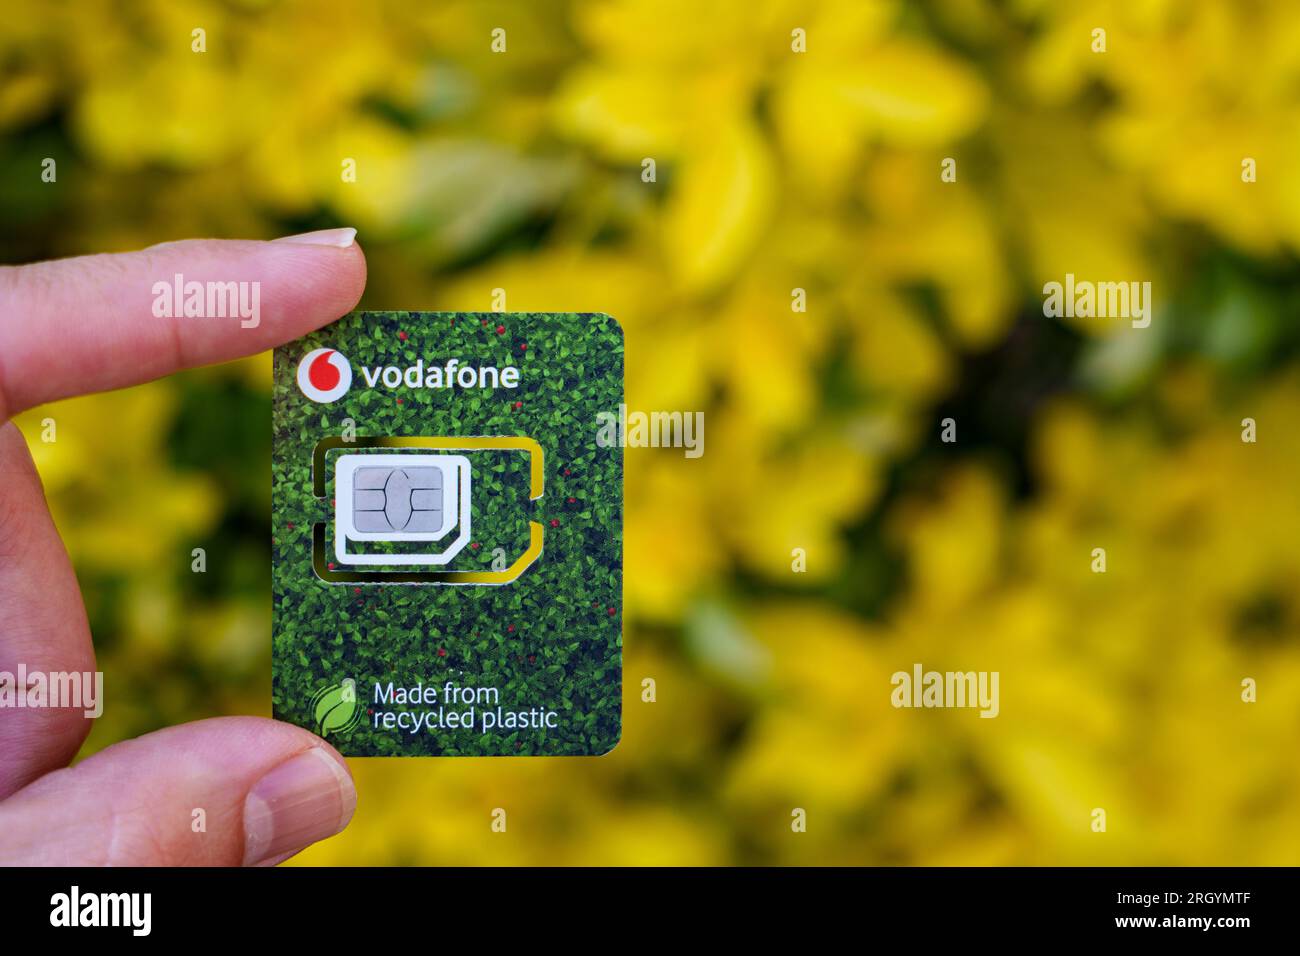 Scheda SIM Vodafone realizzata in plastica riciclata. Immagine ravvicinata con sfondo sfocato e spazio di copia. Stafford, Regno Unito, 12 agosto 2023 Foto Stock